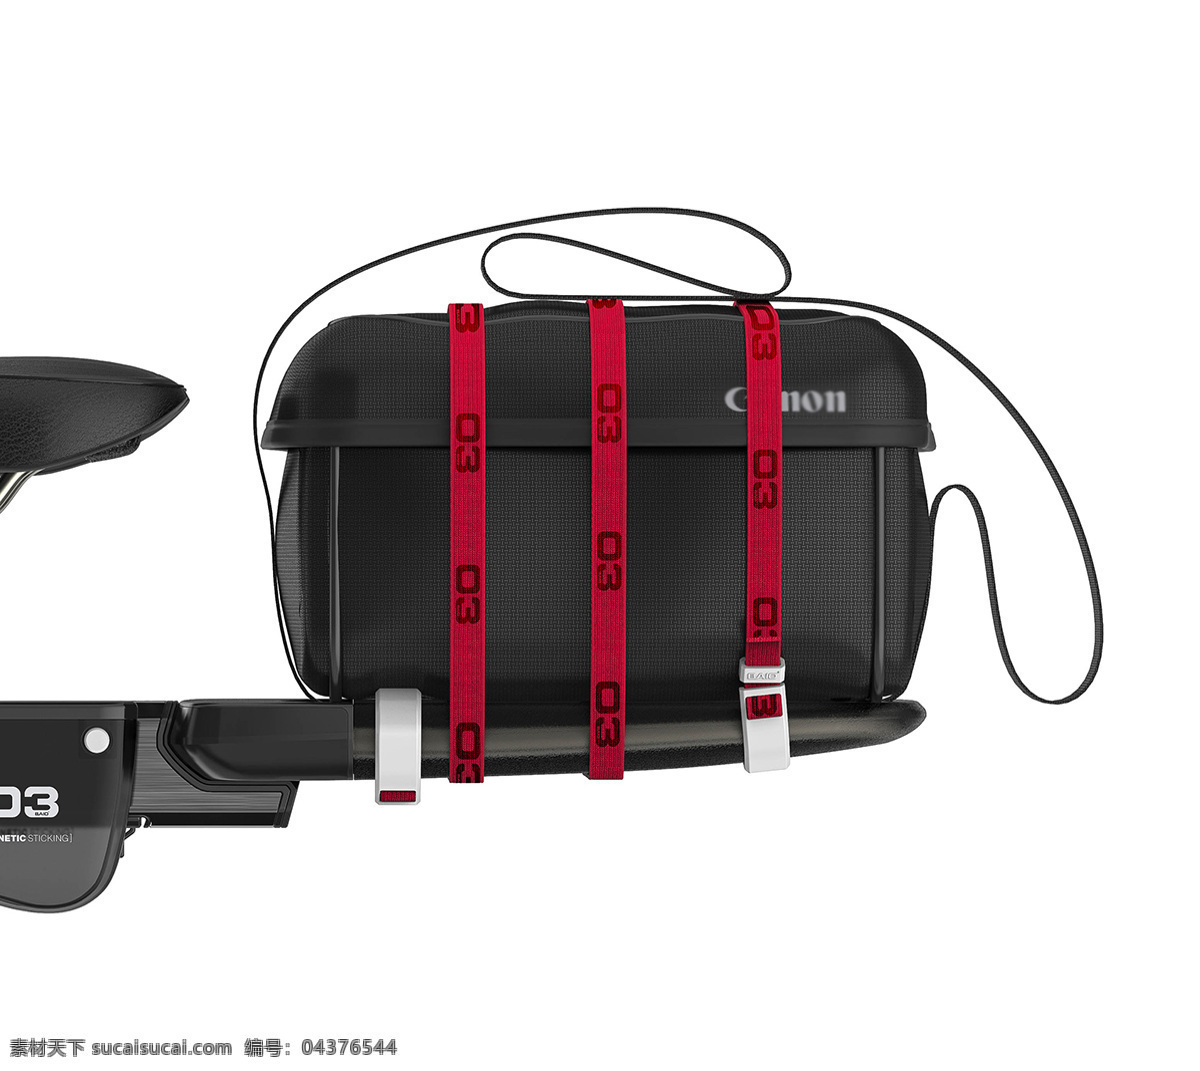 产品设计 系列化 自行车配件 黑色 自行车 包 袋子 组装模块化